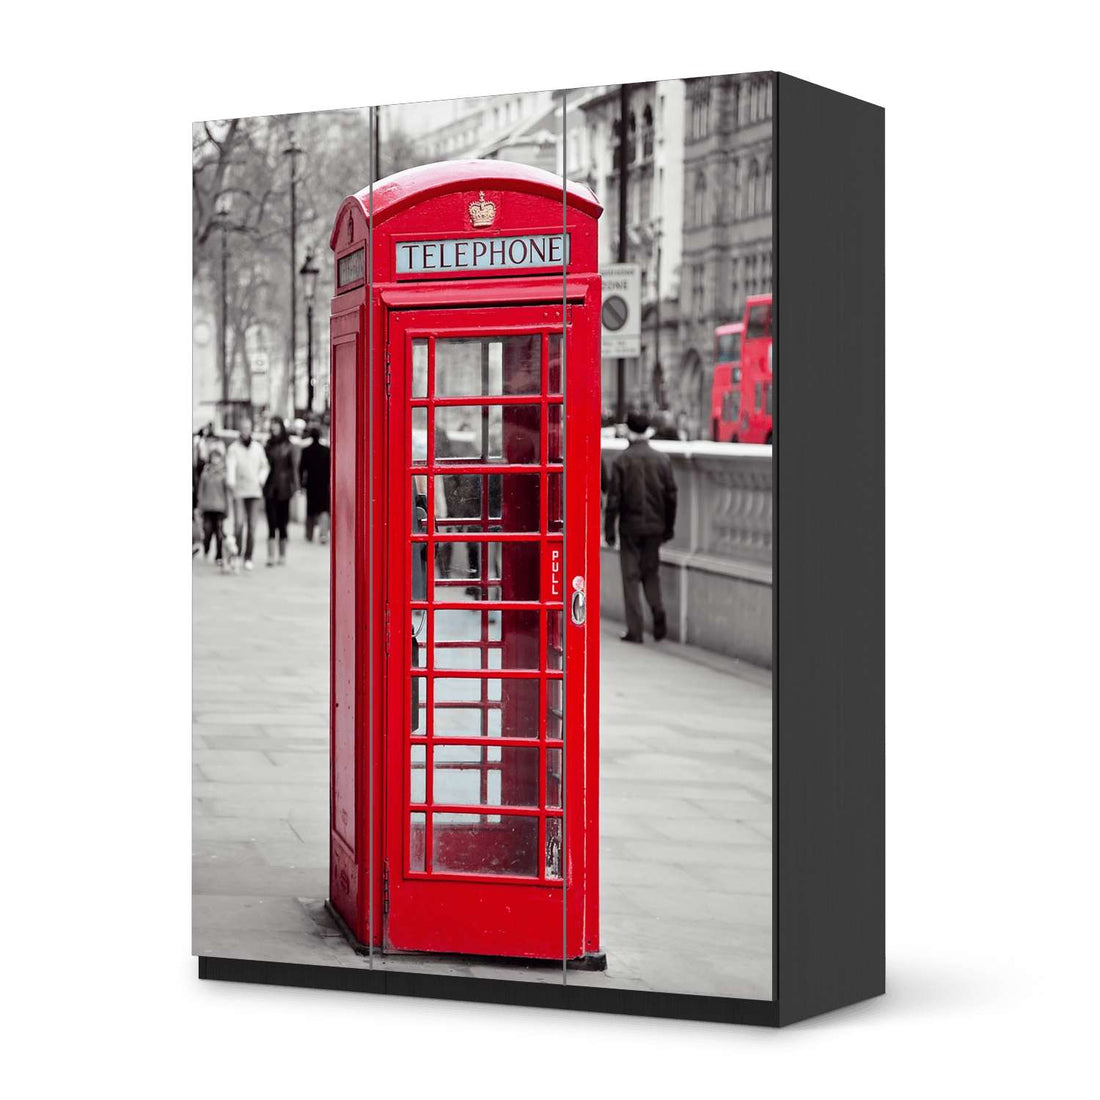 Folie für Möbel Phone Box - IKEA Pax Schrank 201 cm Höhe - 3 Türen - schwarz